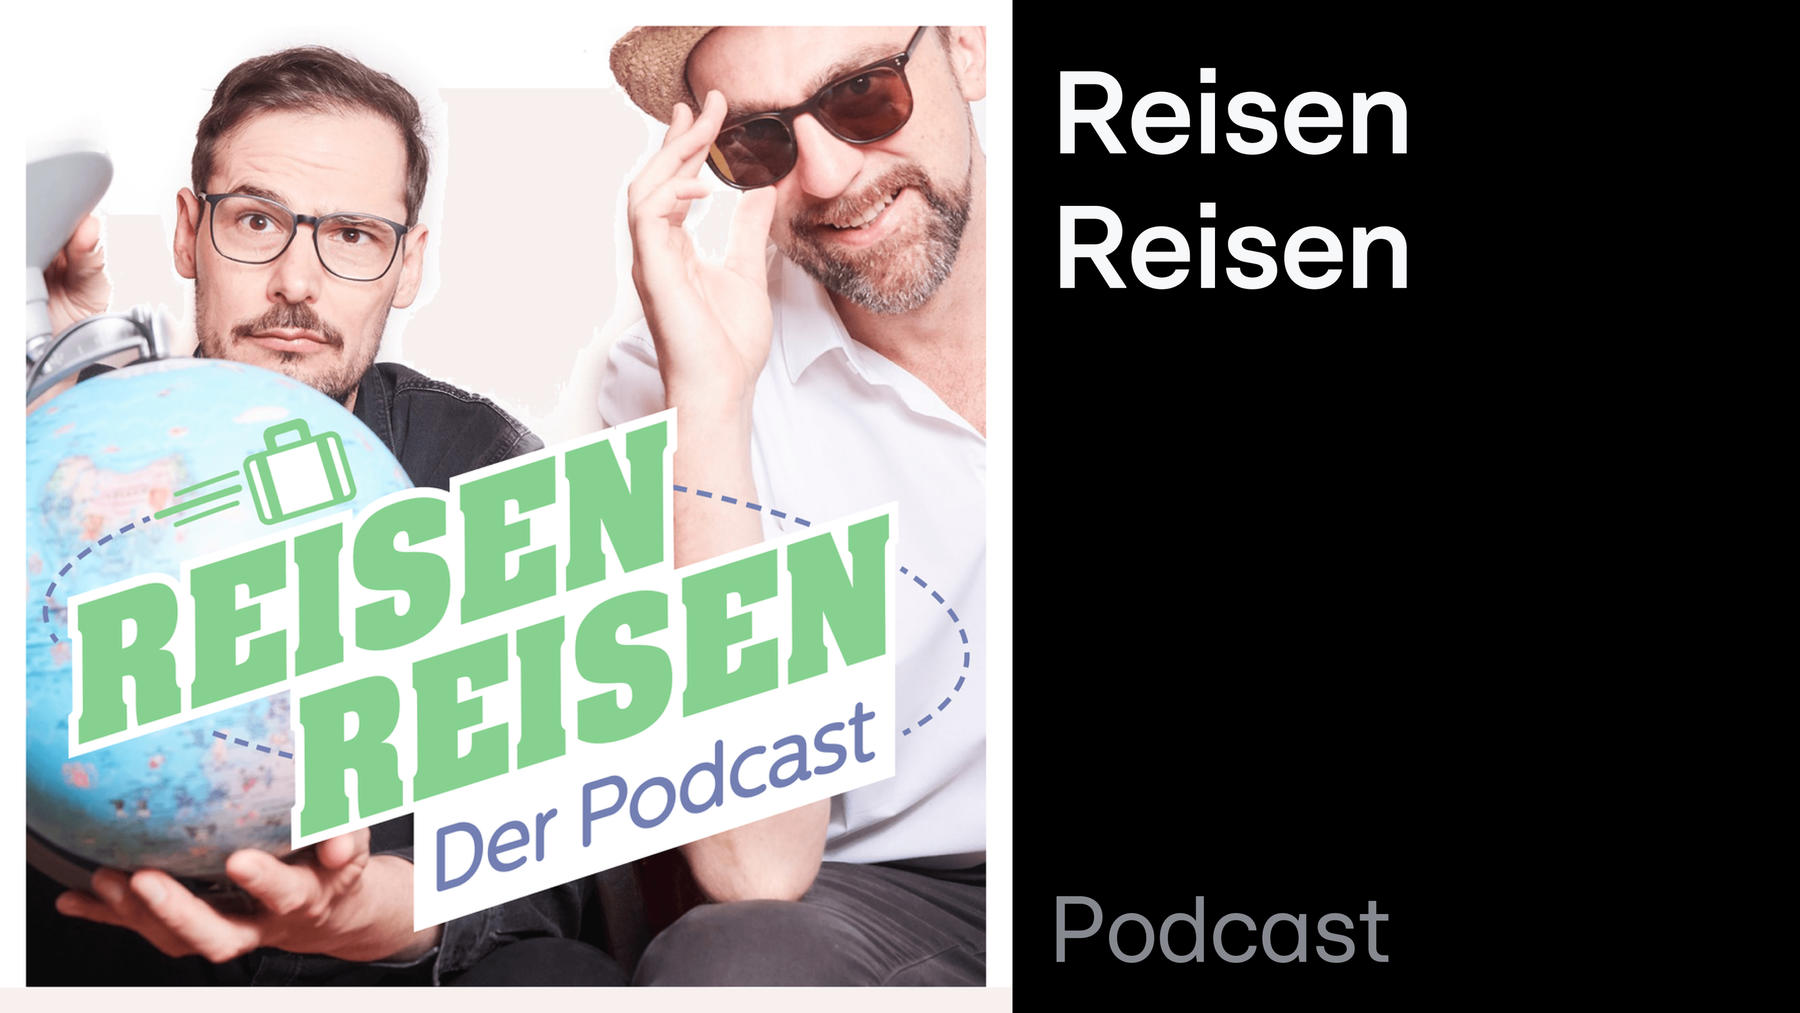 Podcast: Reisen Reisen